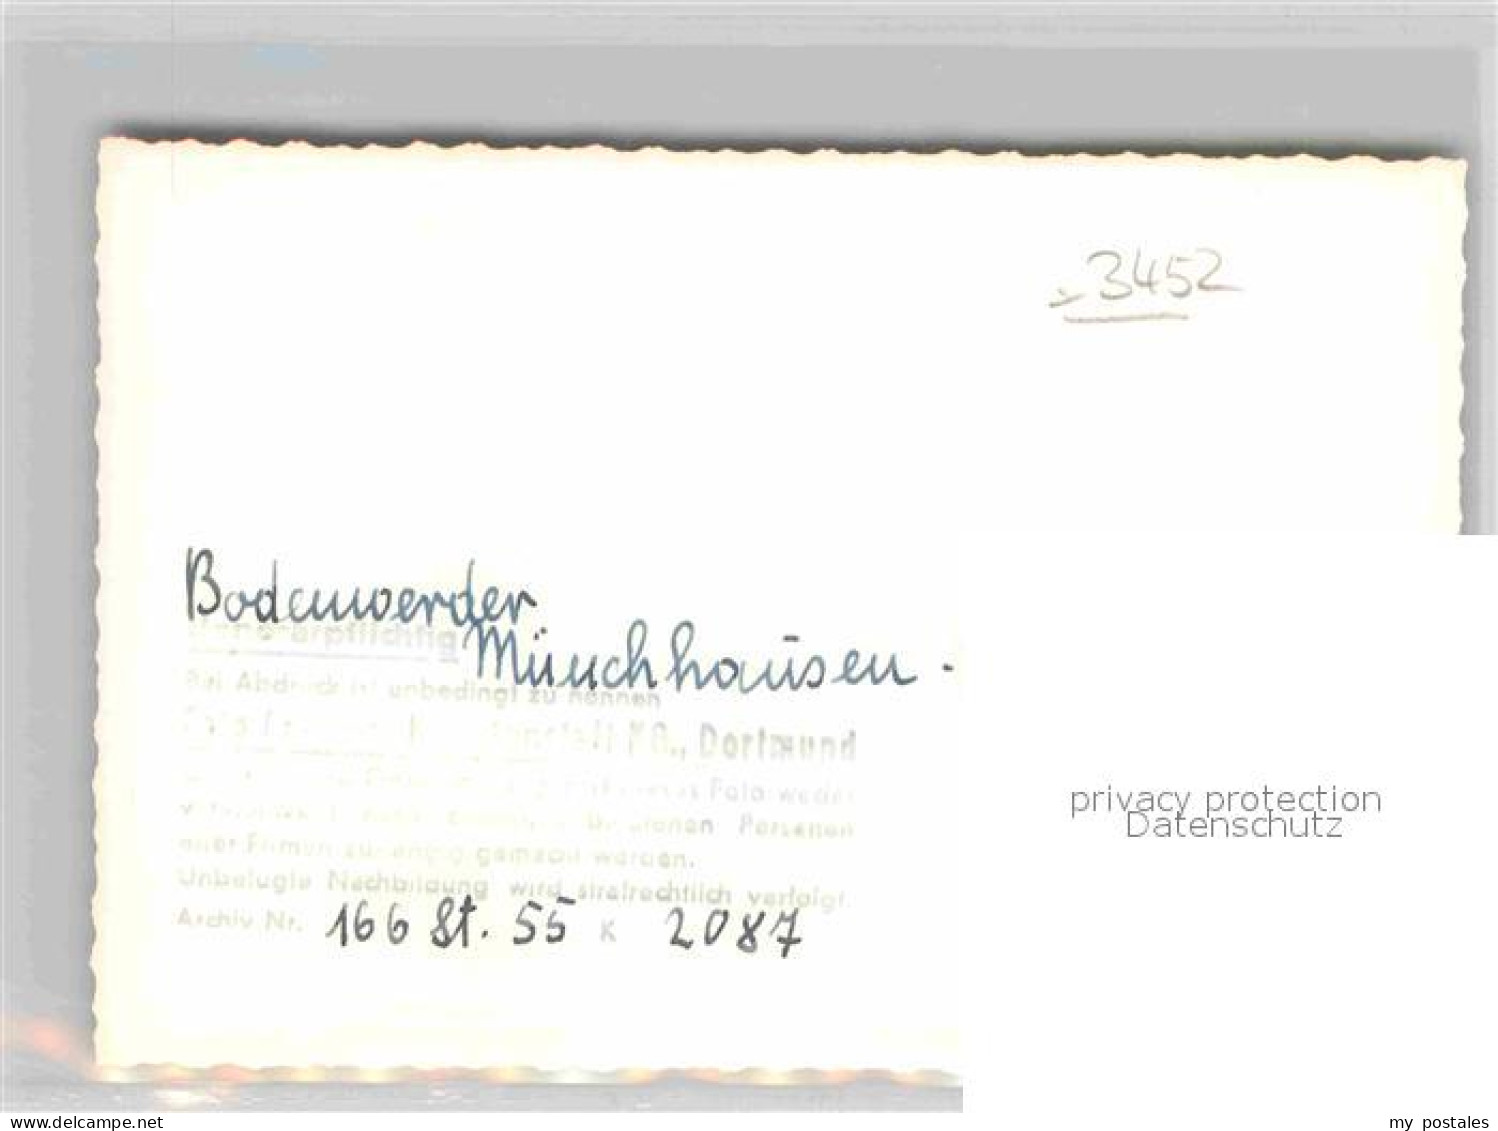 42705064 Bodenwerder Muenchhausen Haus Bodenwerder - Bodenwerder